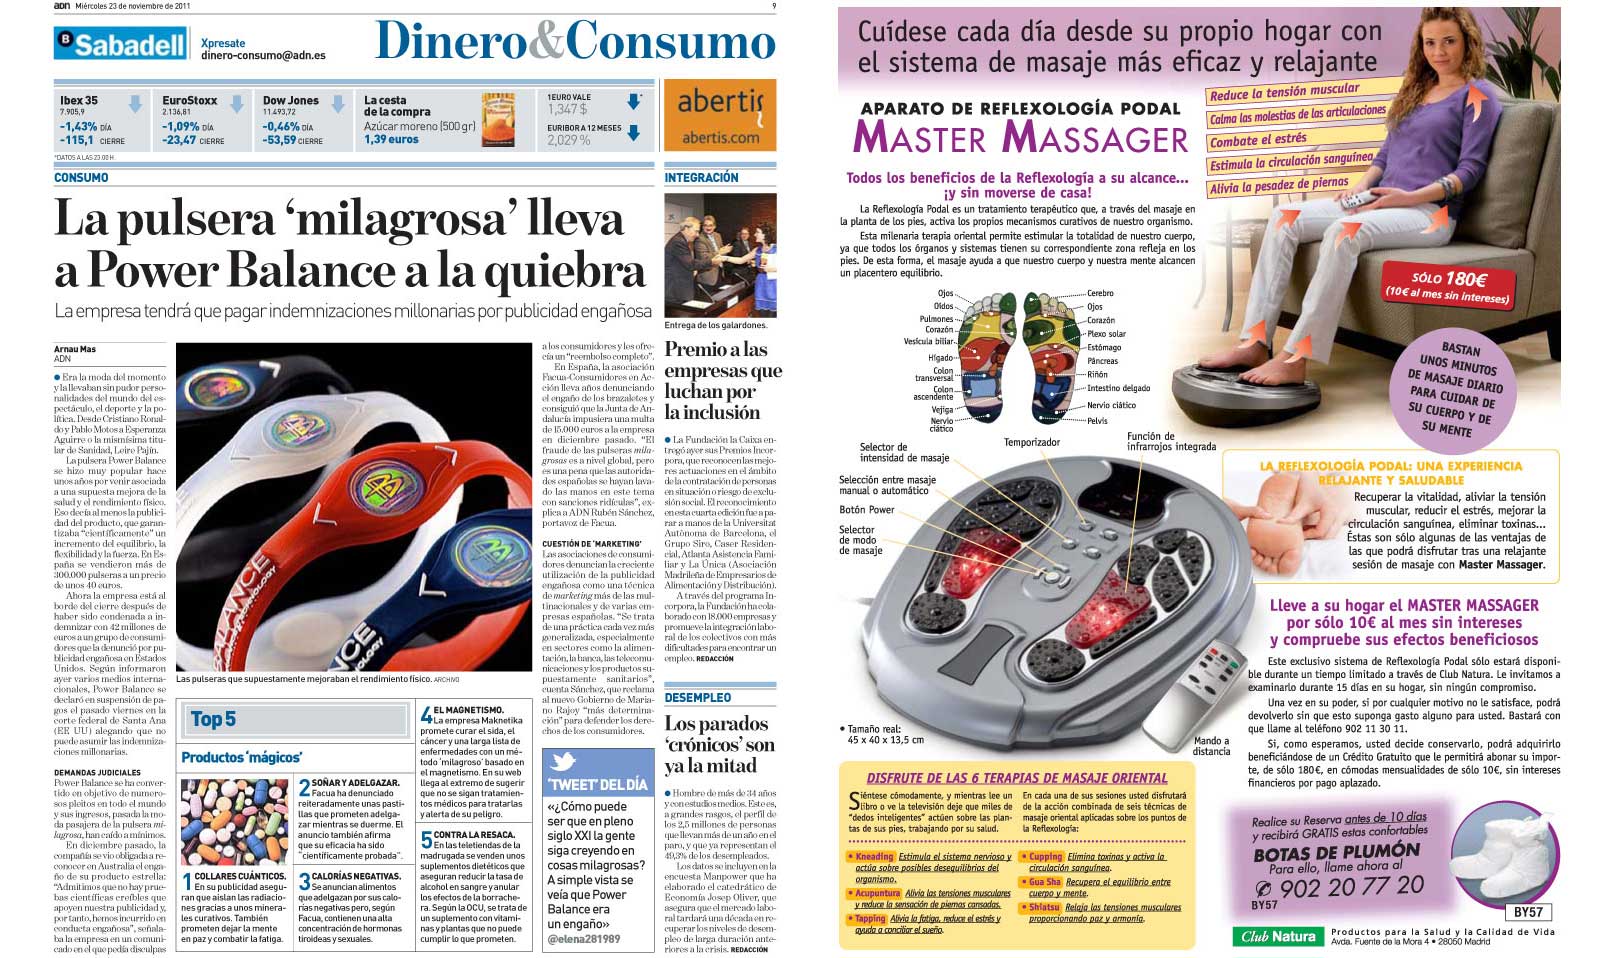 Información sobre la Power Balance en 'ADN' y publicidad de la contraportada del diario del mismo día.